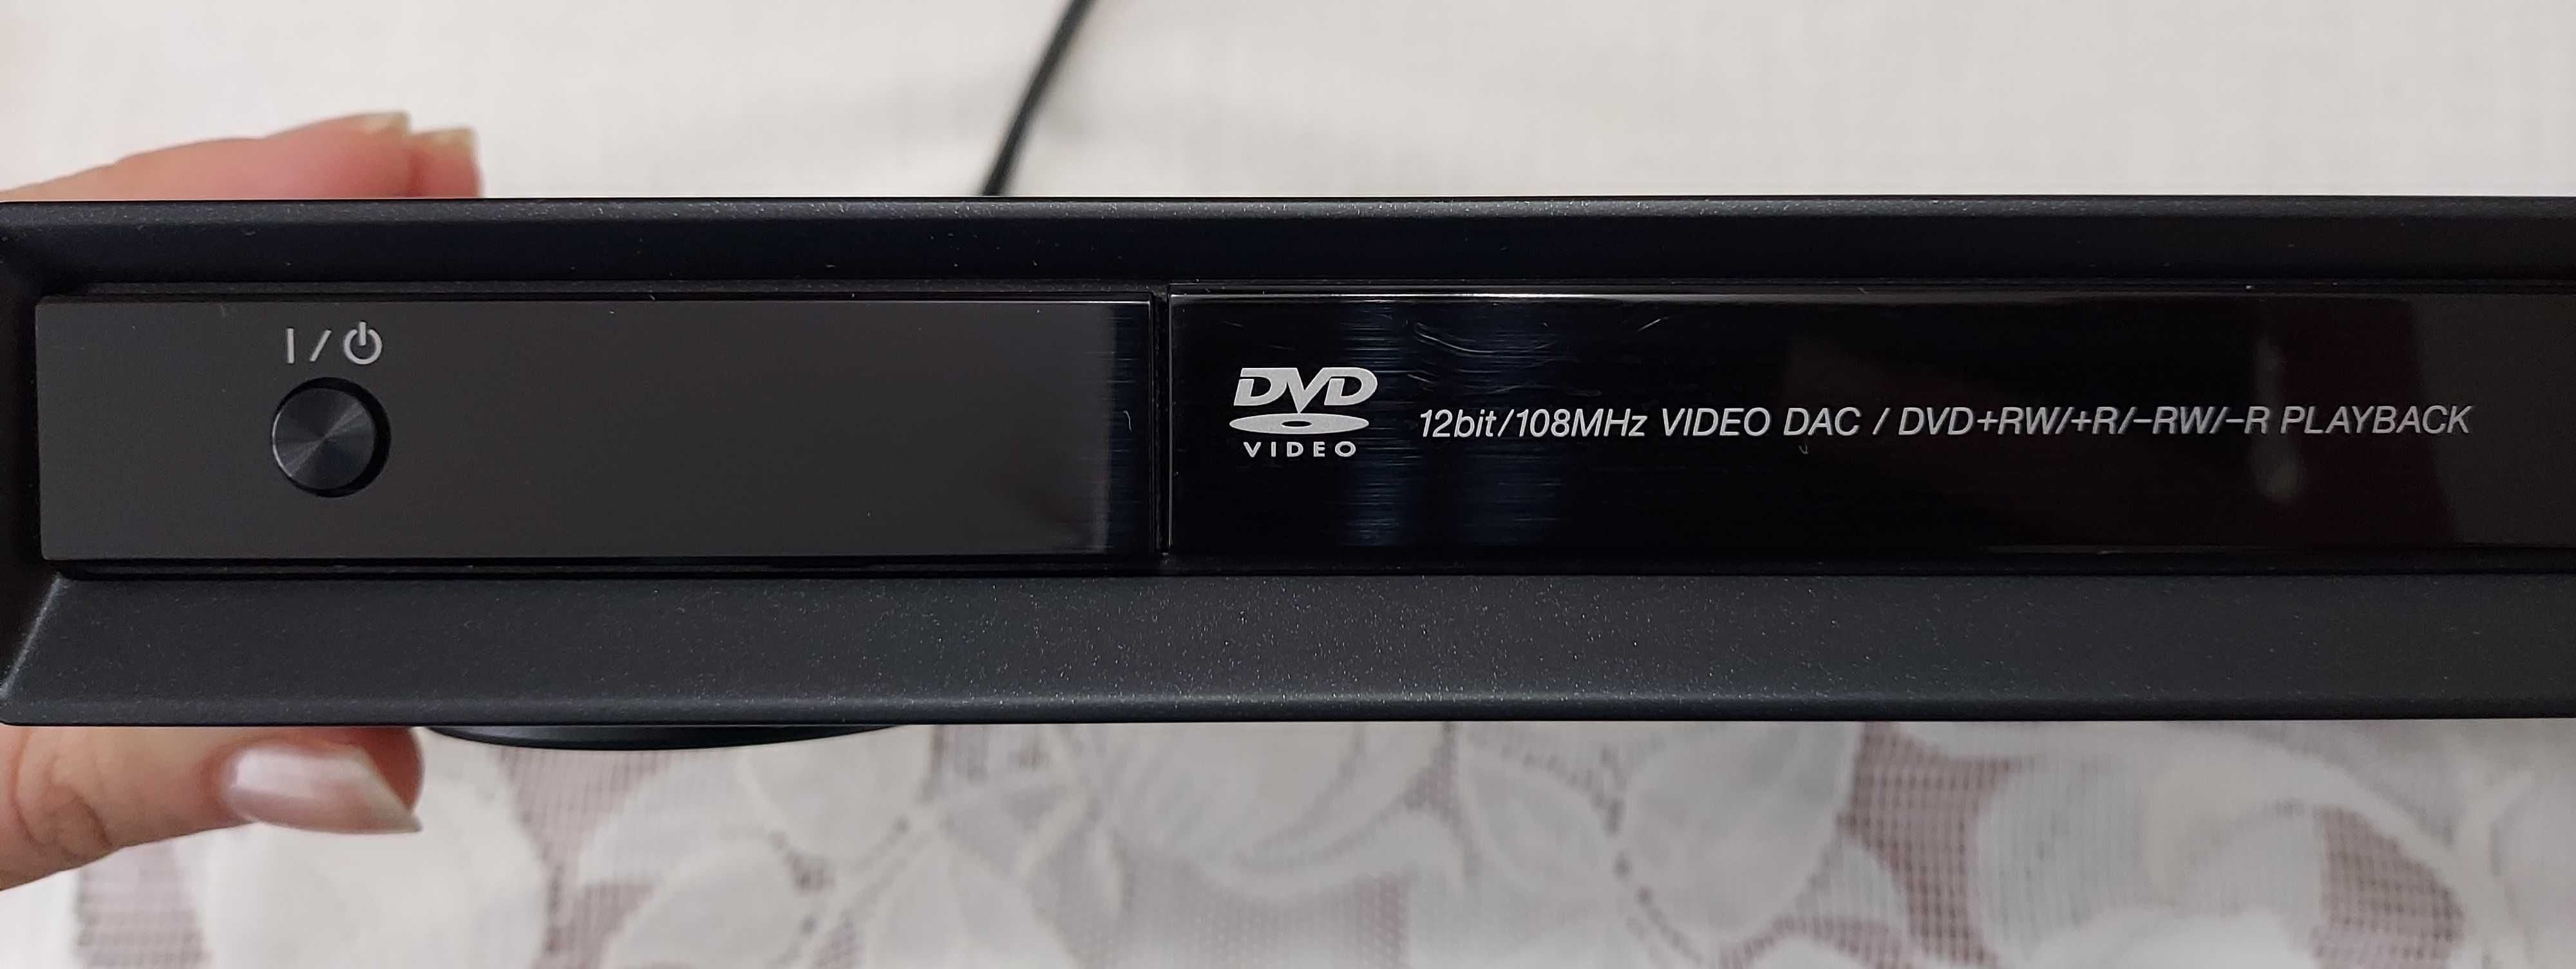 Sony CD/DVD player DVP-NS38